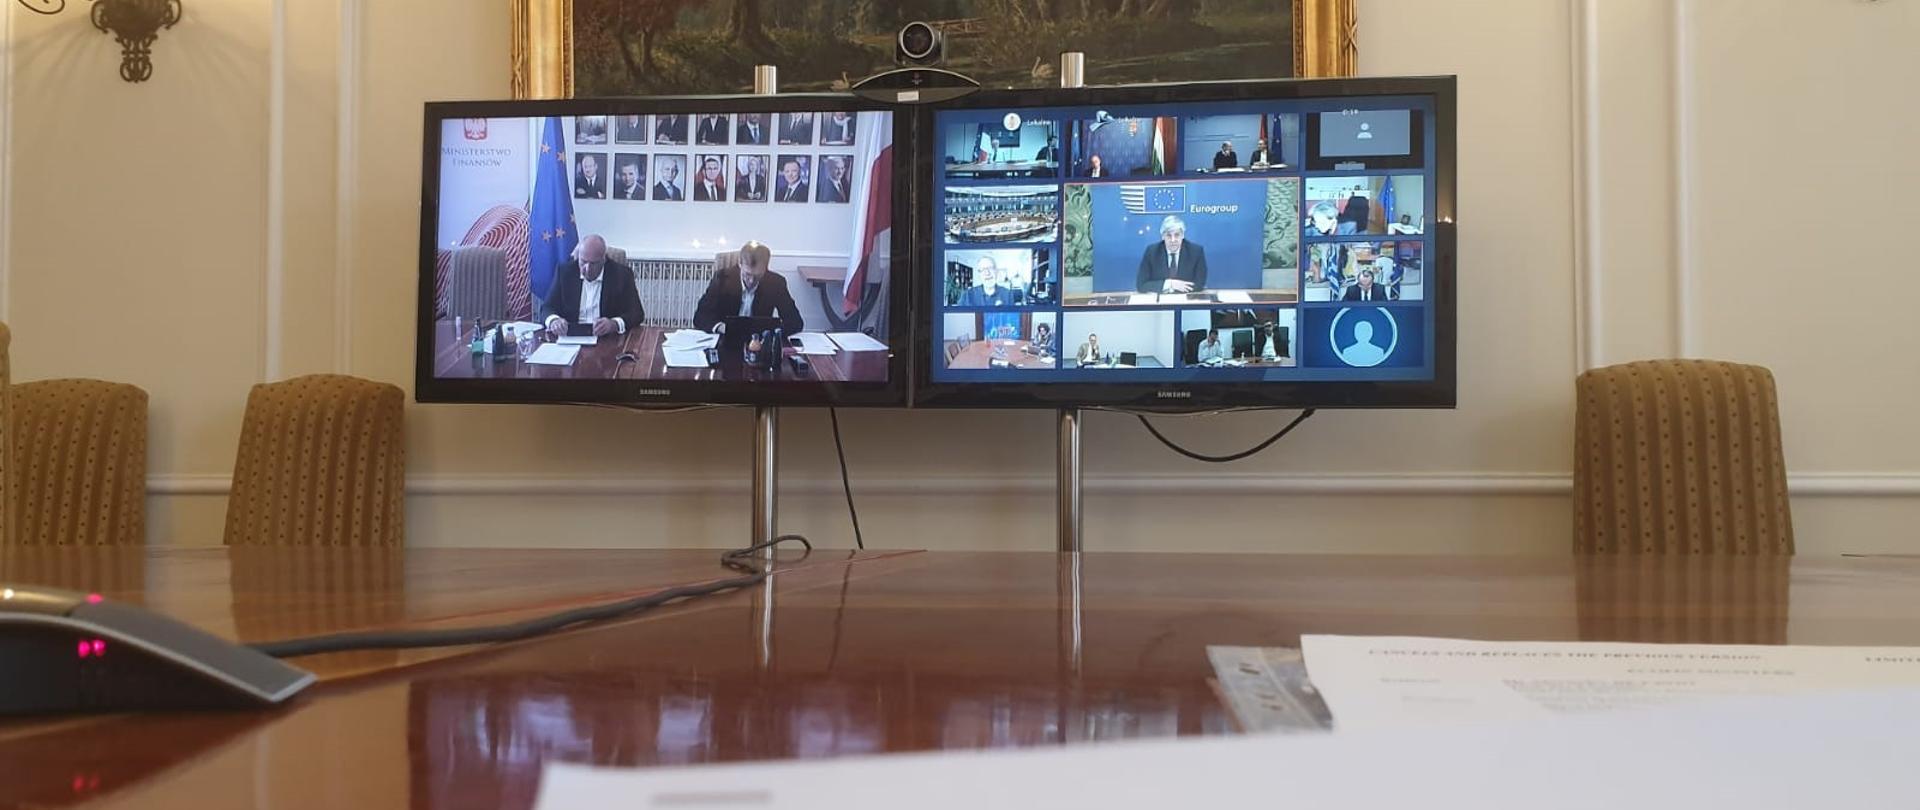 Telekonferencja eurogrupy - dwa monitory na których widać uczestników spotkania a przed monitorami dokumenty